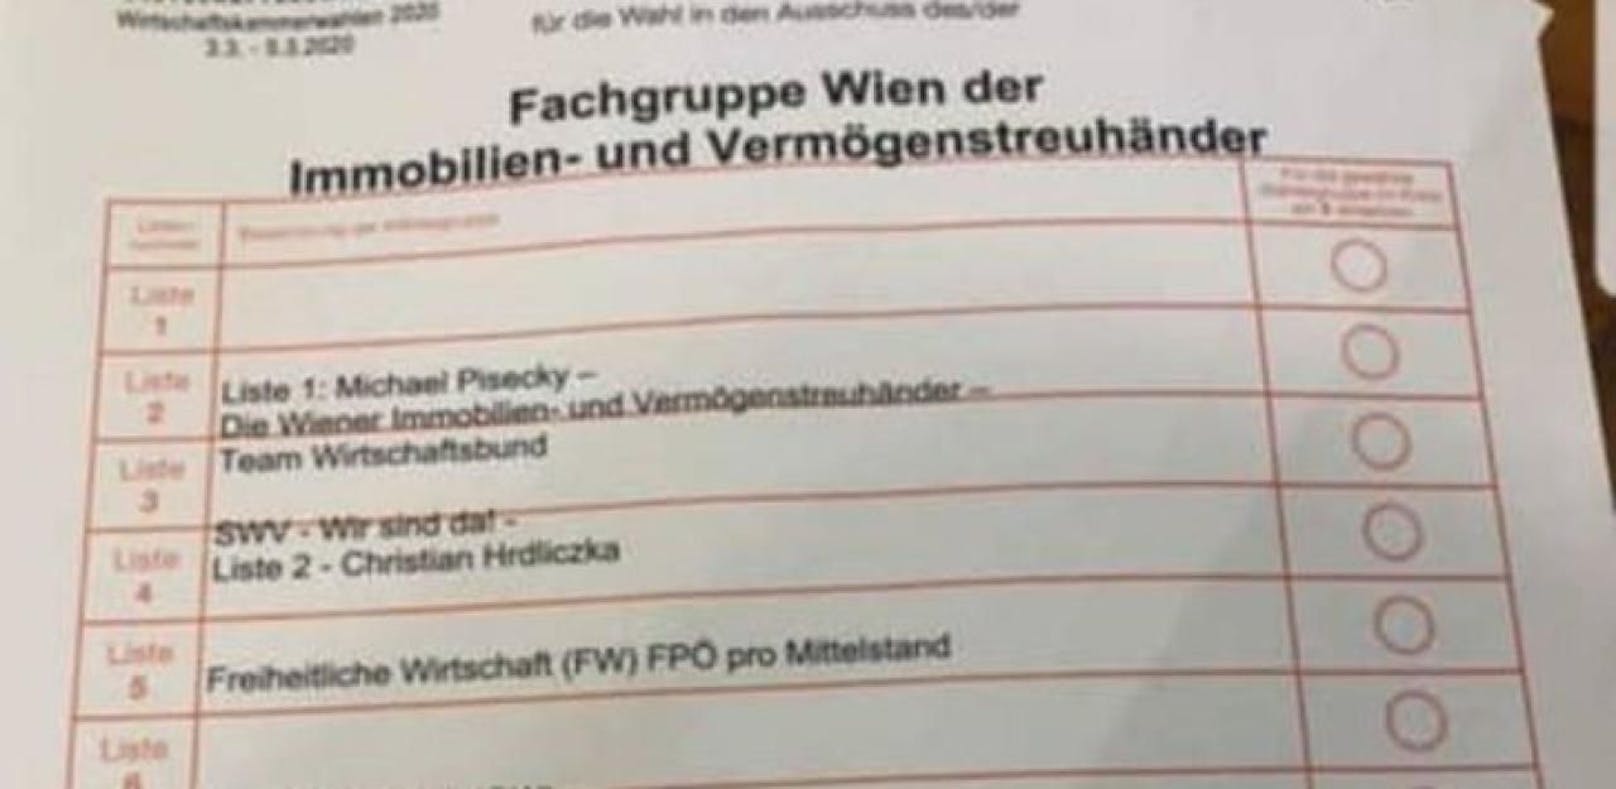 Sebastian Beiglböck von den Wiener Neos postete dieses Foto vom Wahlzettel der Wiener Wirtschaftskammerwahl auf Facebook.